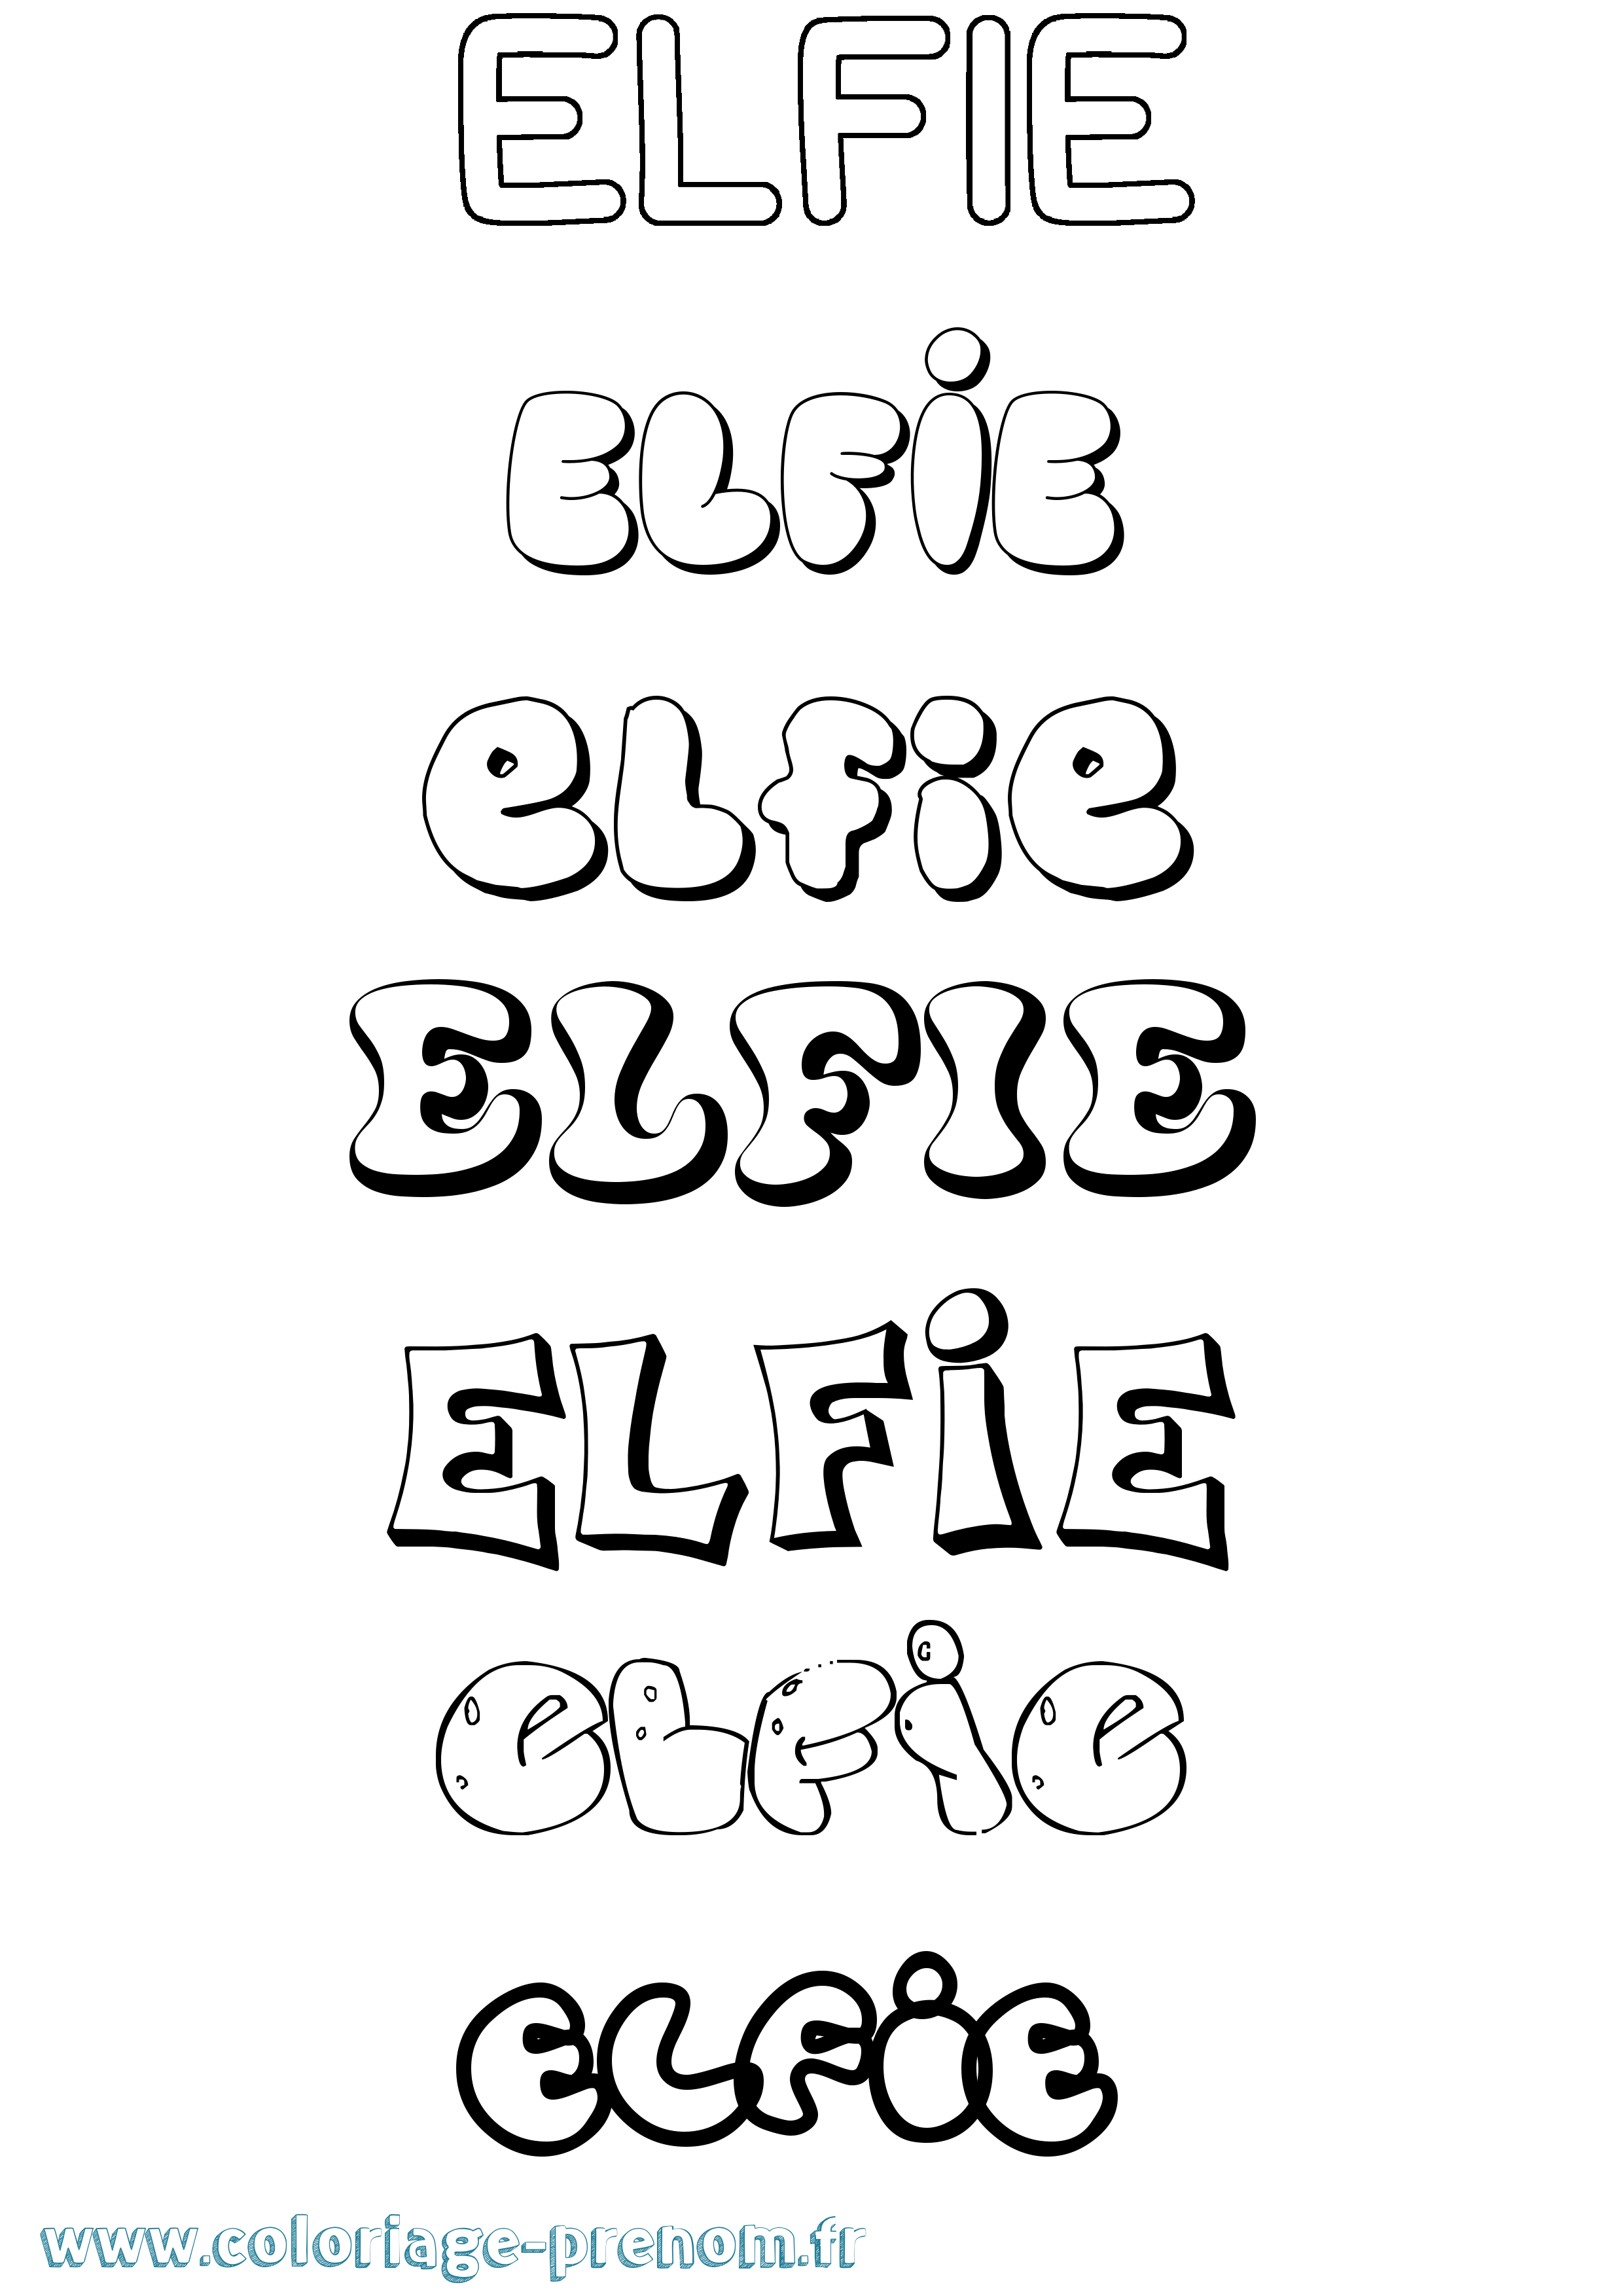 Coloriage prénom Elfie Bubble